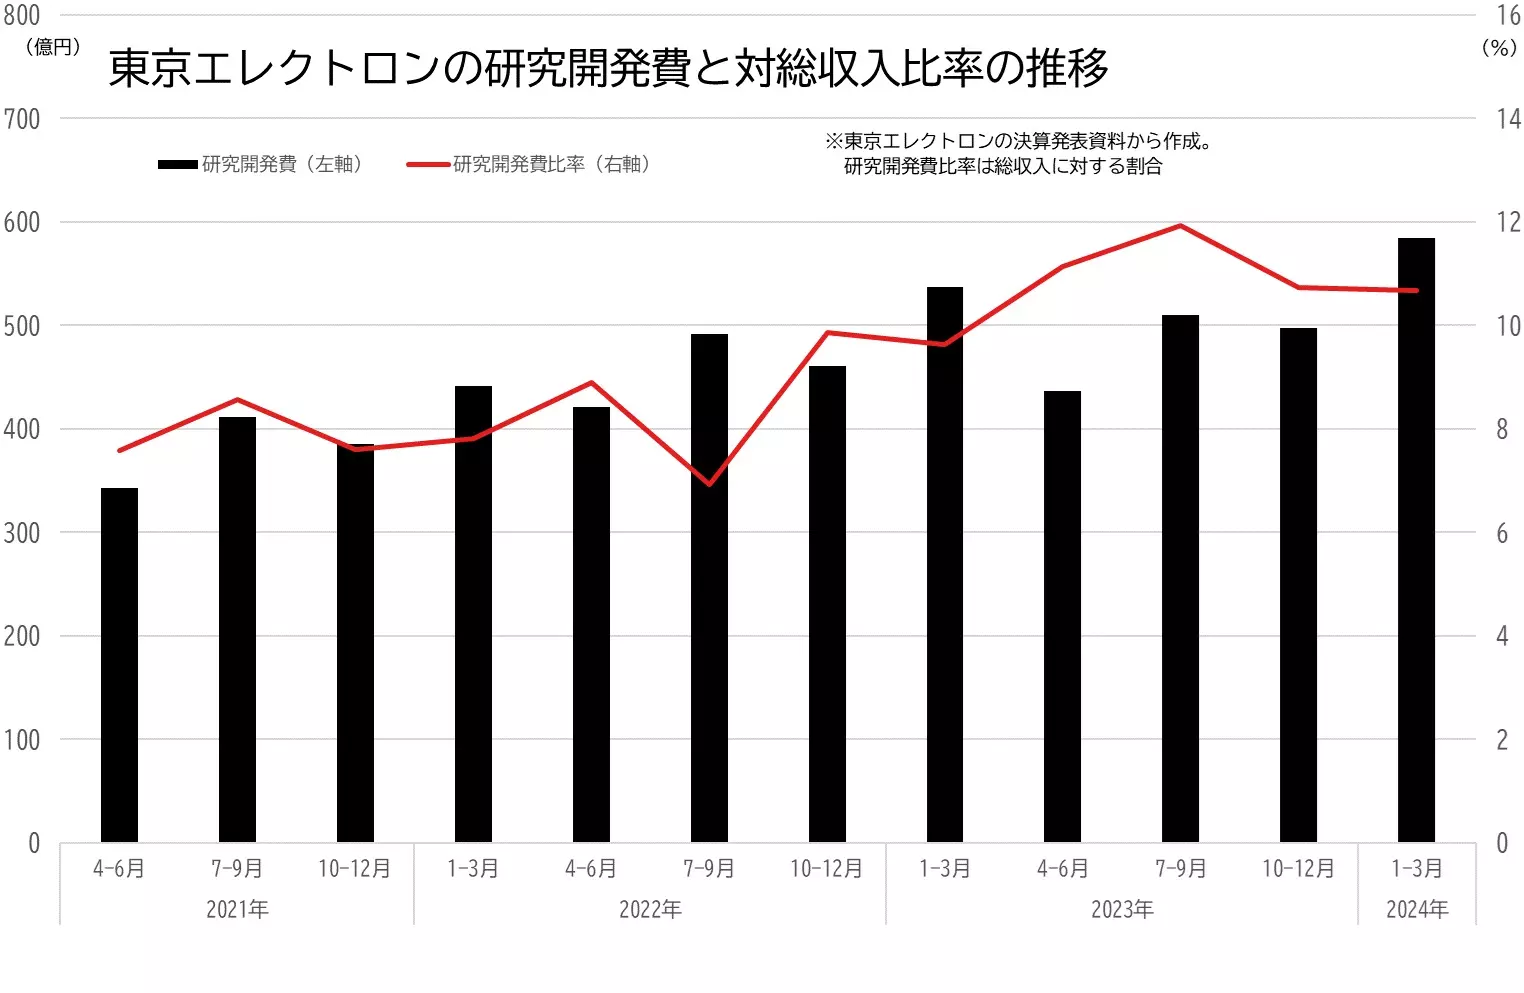 東京エレクトロンの研究開発費と総収入に占める比率の推移のグラフ